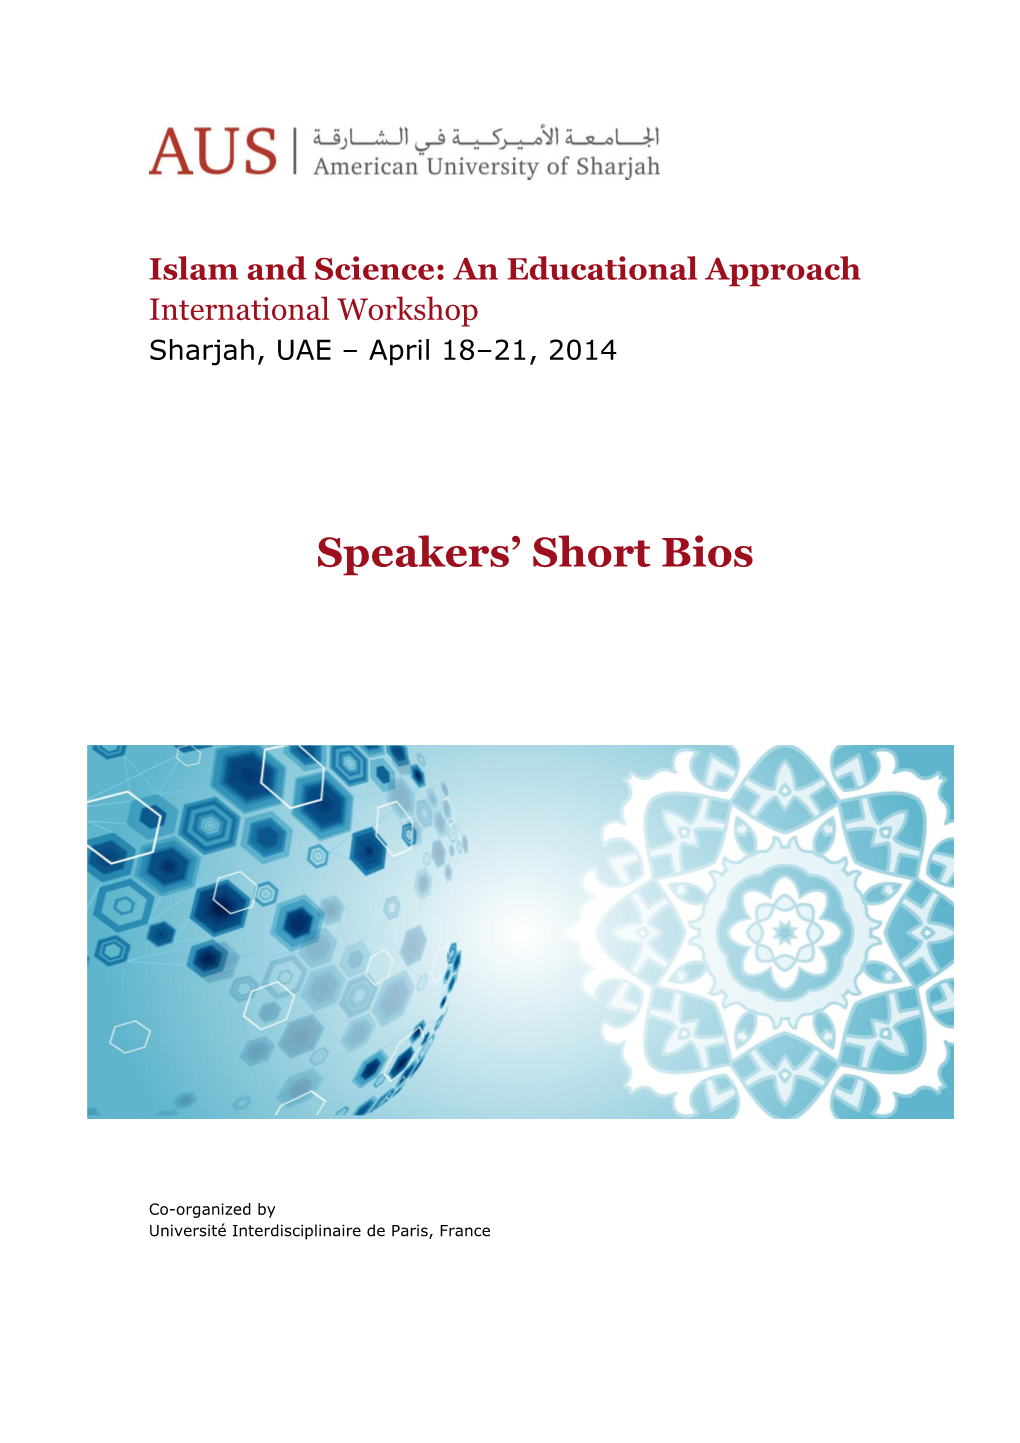 Islam and Science Workshop Speakers' Bios